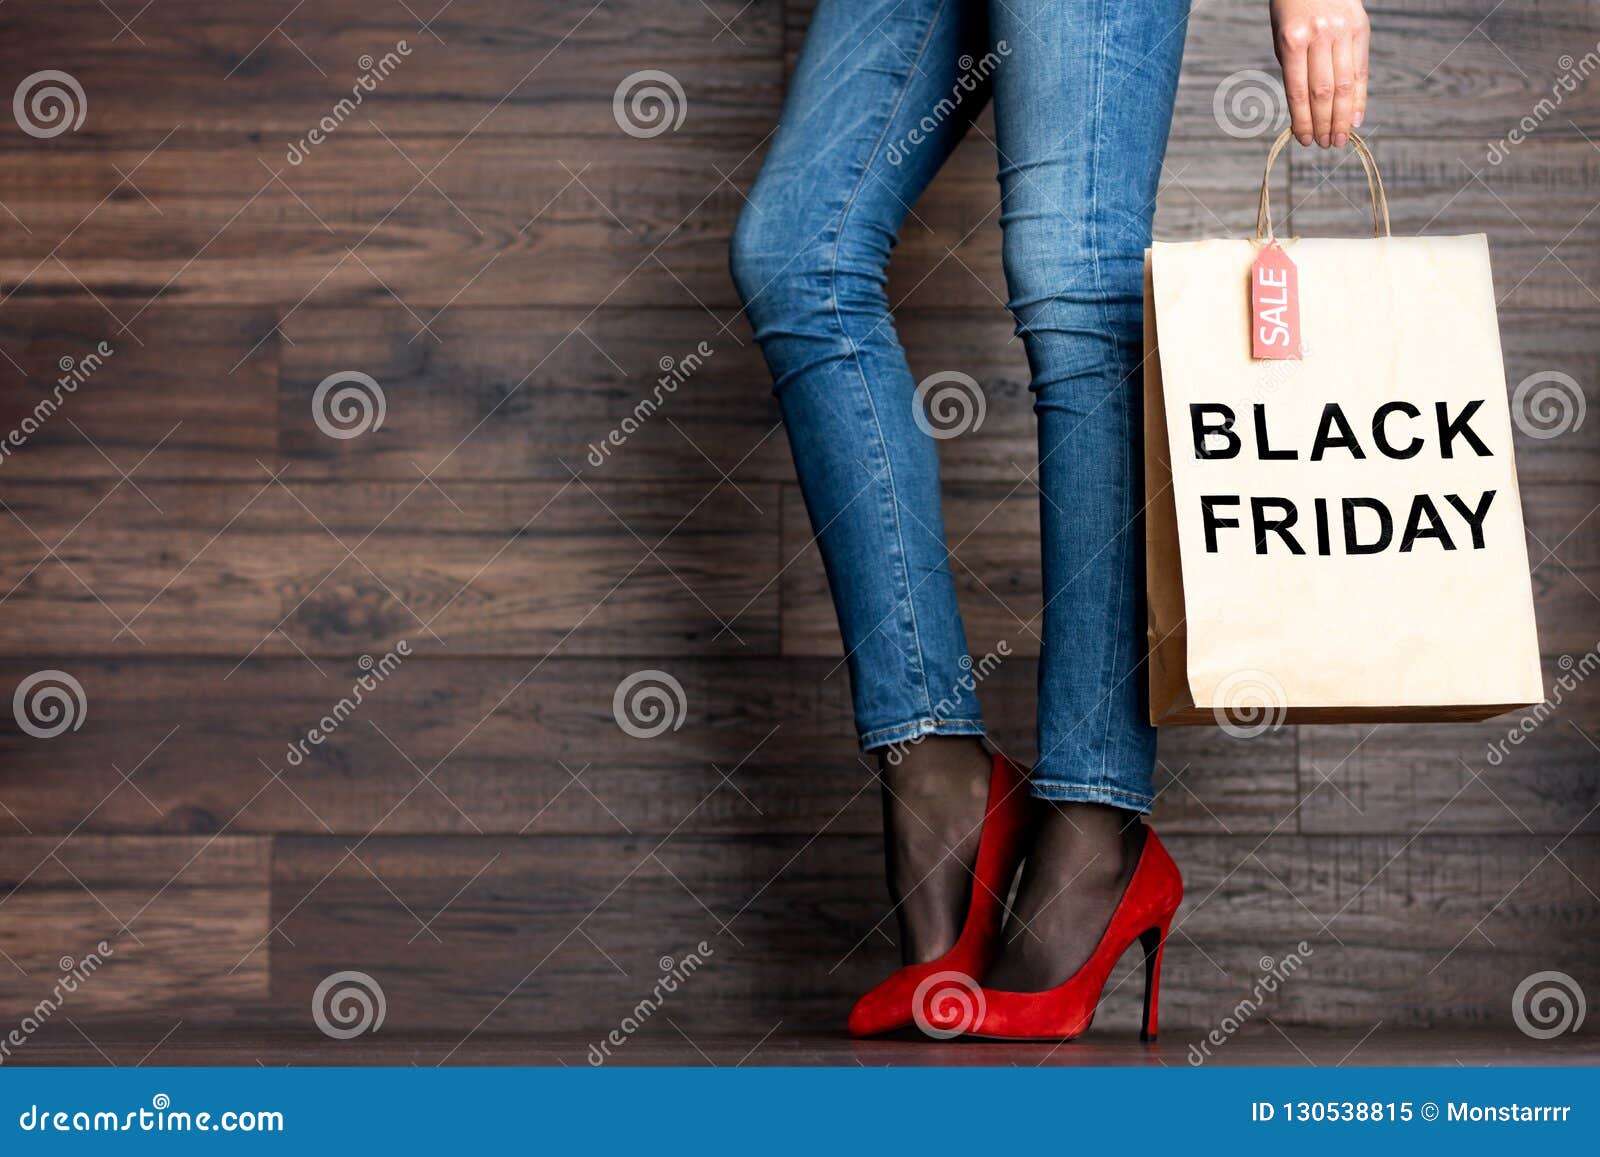 black friday heels